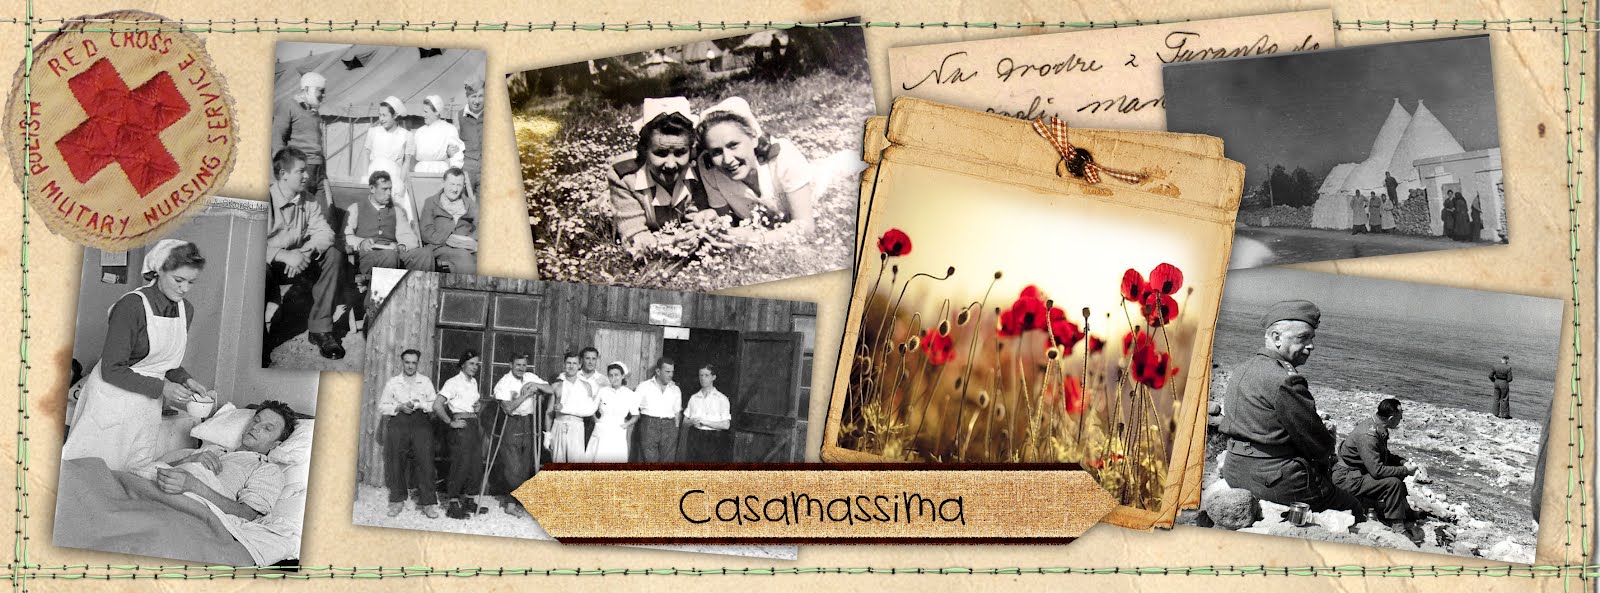 w drodze na Monte Cassino była też Casamassima...